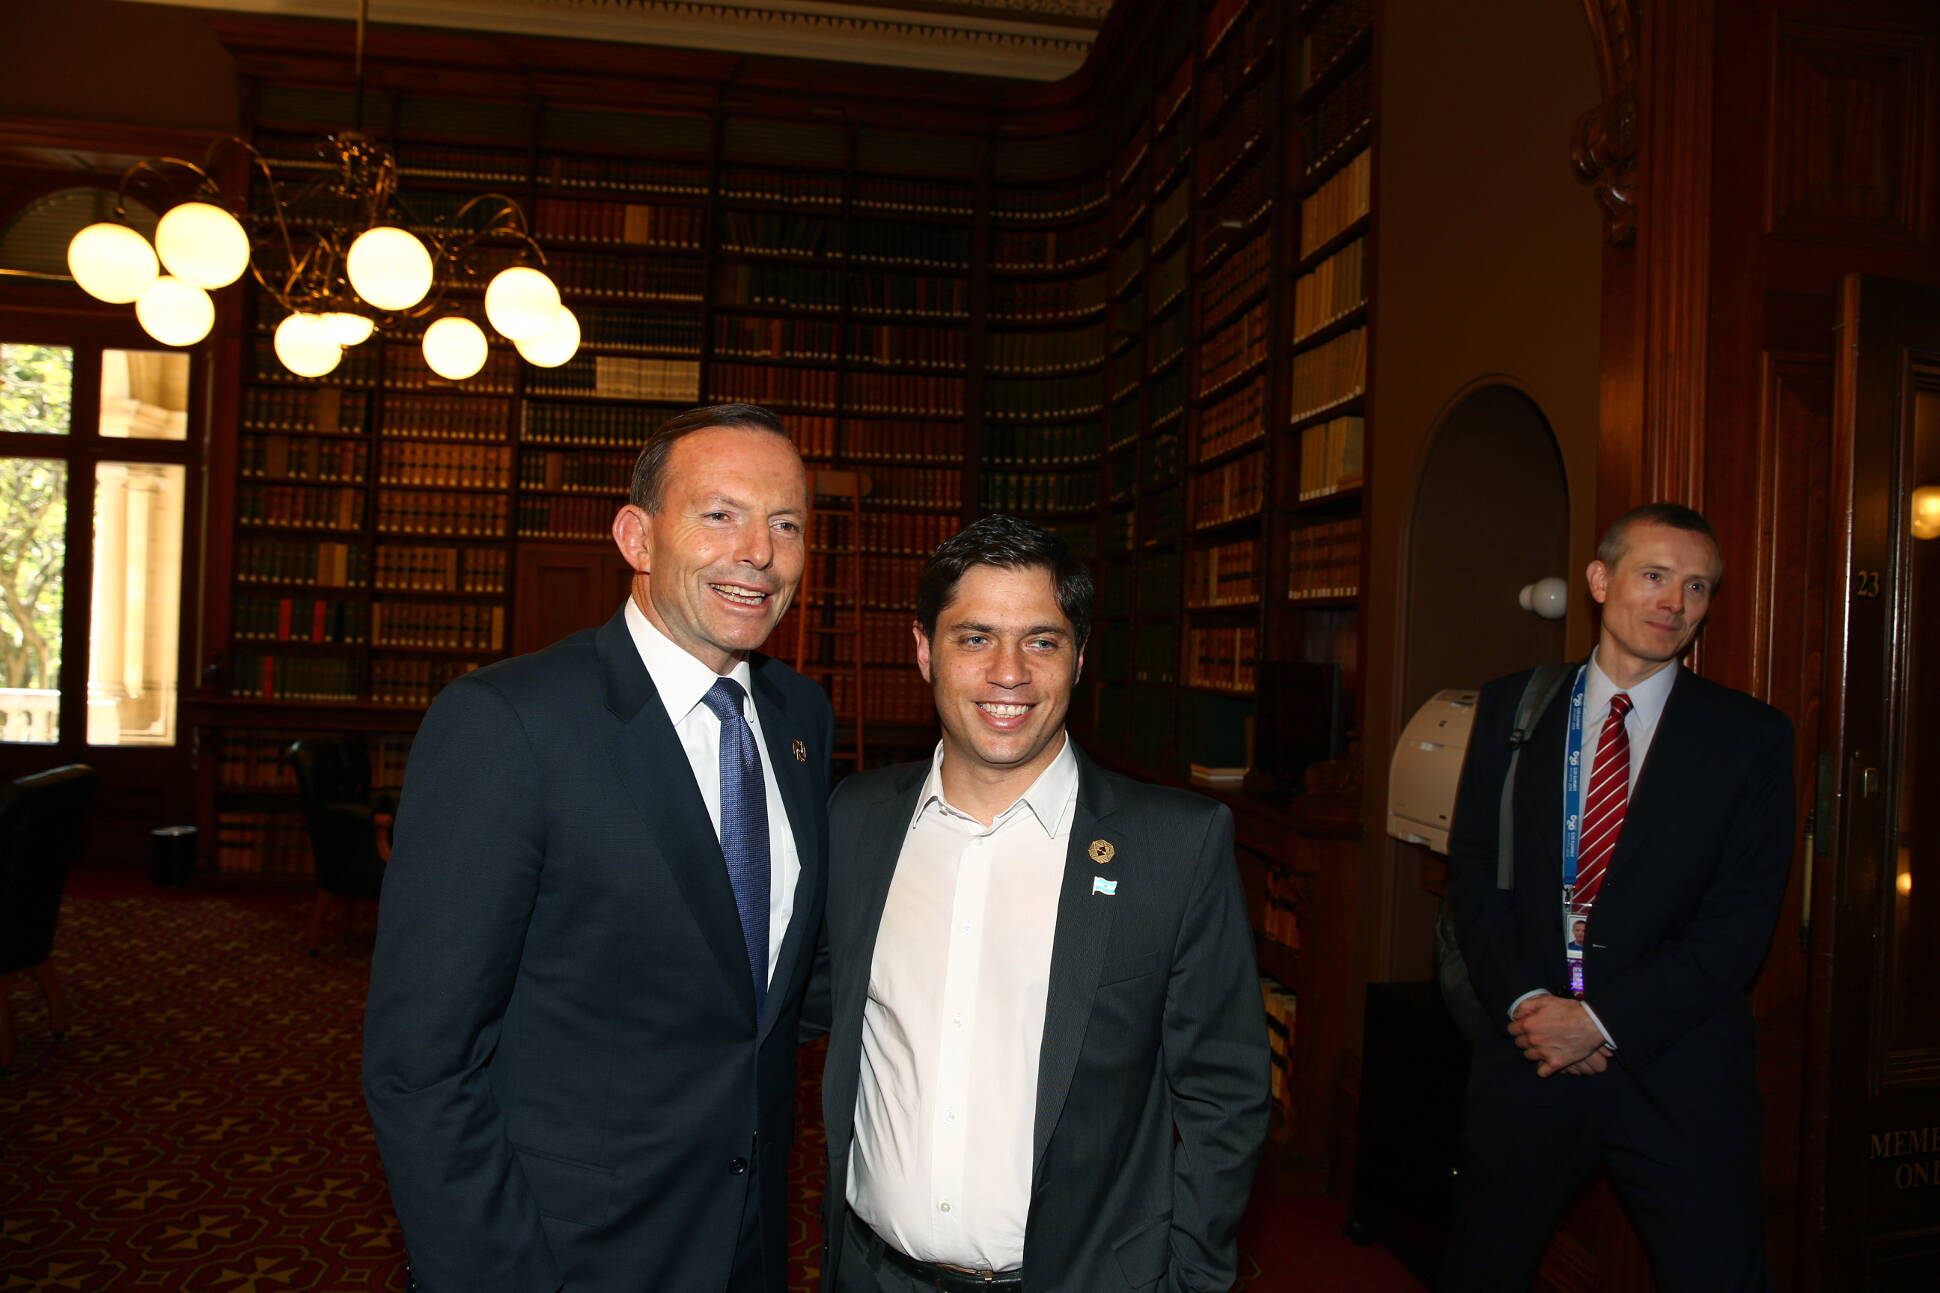 El ministro de Economía, Axel Kicillof, es recibido por el primer ministro de Australia, Tony Abbott, al comienzo de las deliberaciones de la Cumbre del G20, en Brisbane.